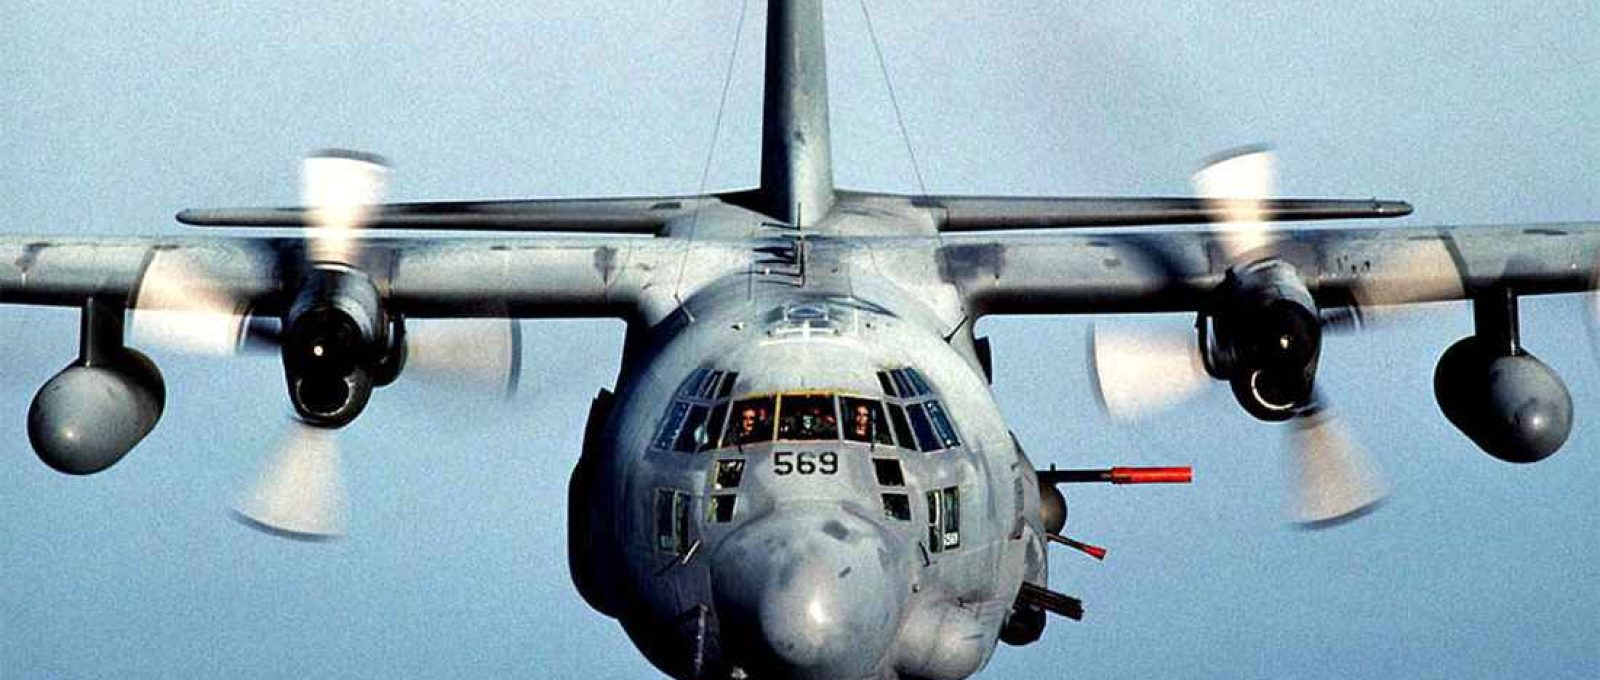 AC-130 Gunship (Military.com).